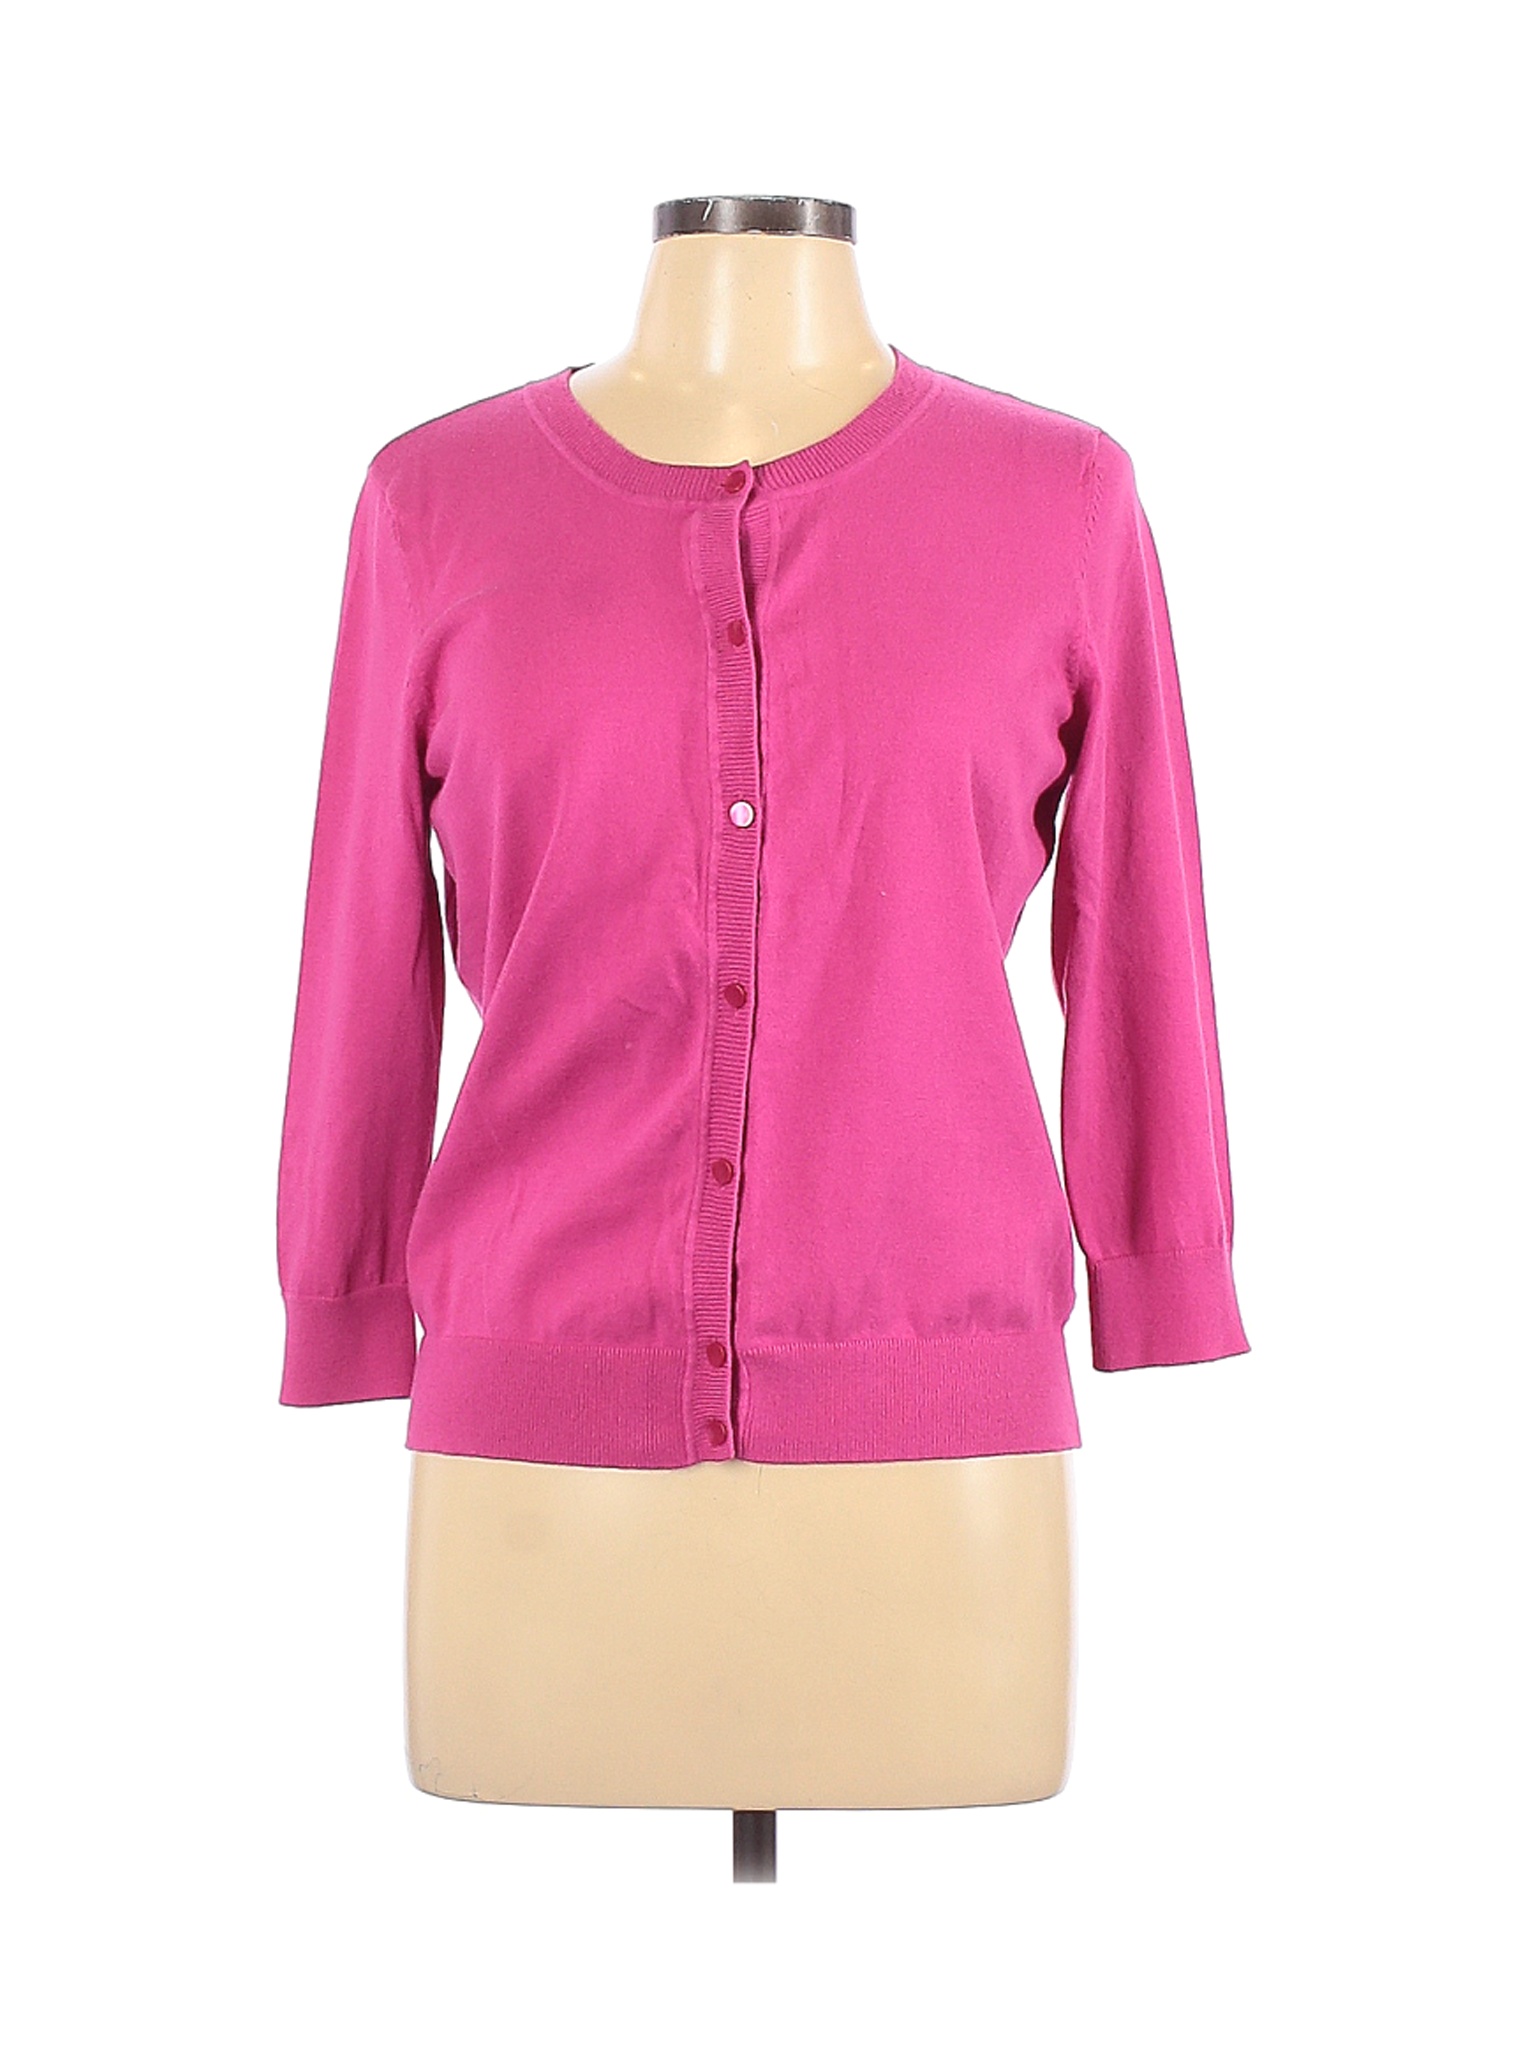 Talbots Women Pink Cardigan L | eBay